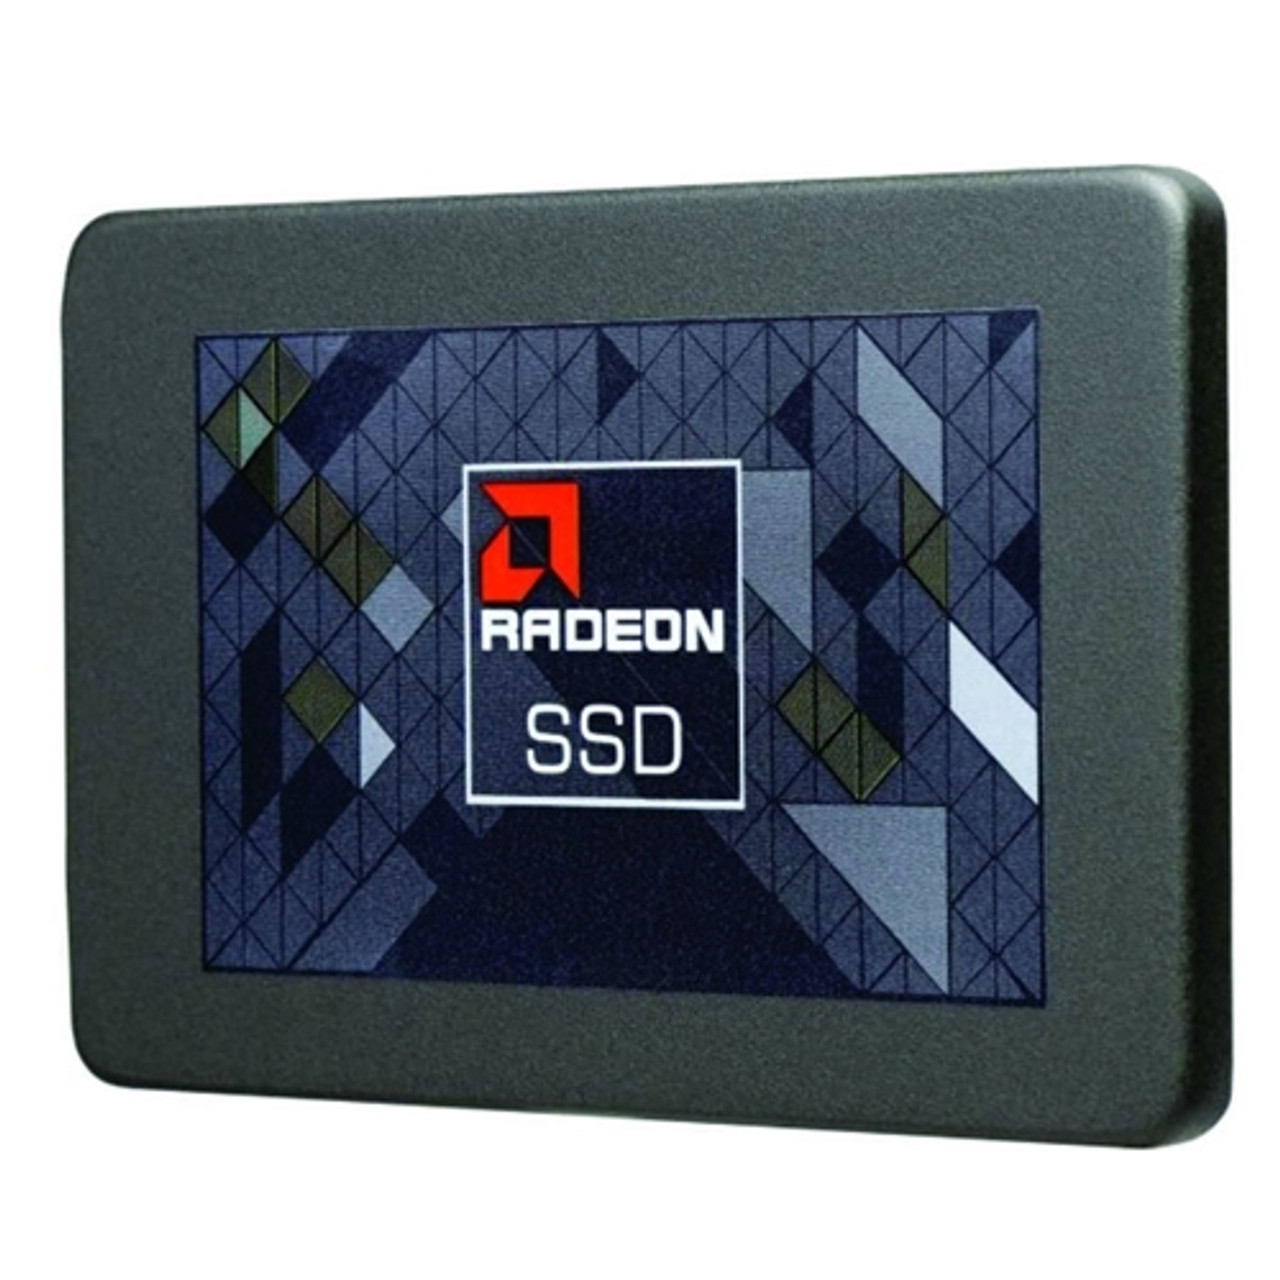 AMD Radeon R3SL240G SSD R3 240GB 2.5" SATA III Internal Solid State Drive